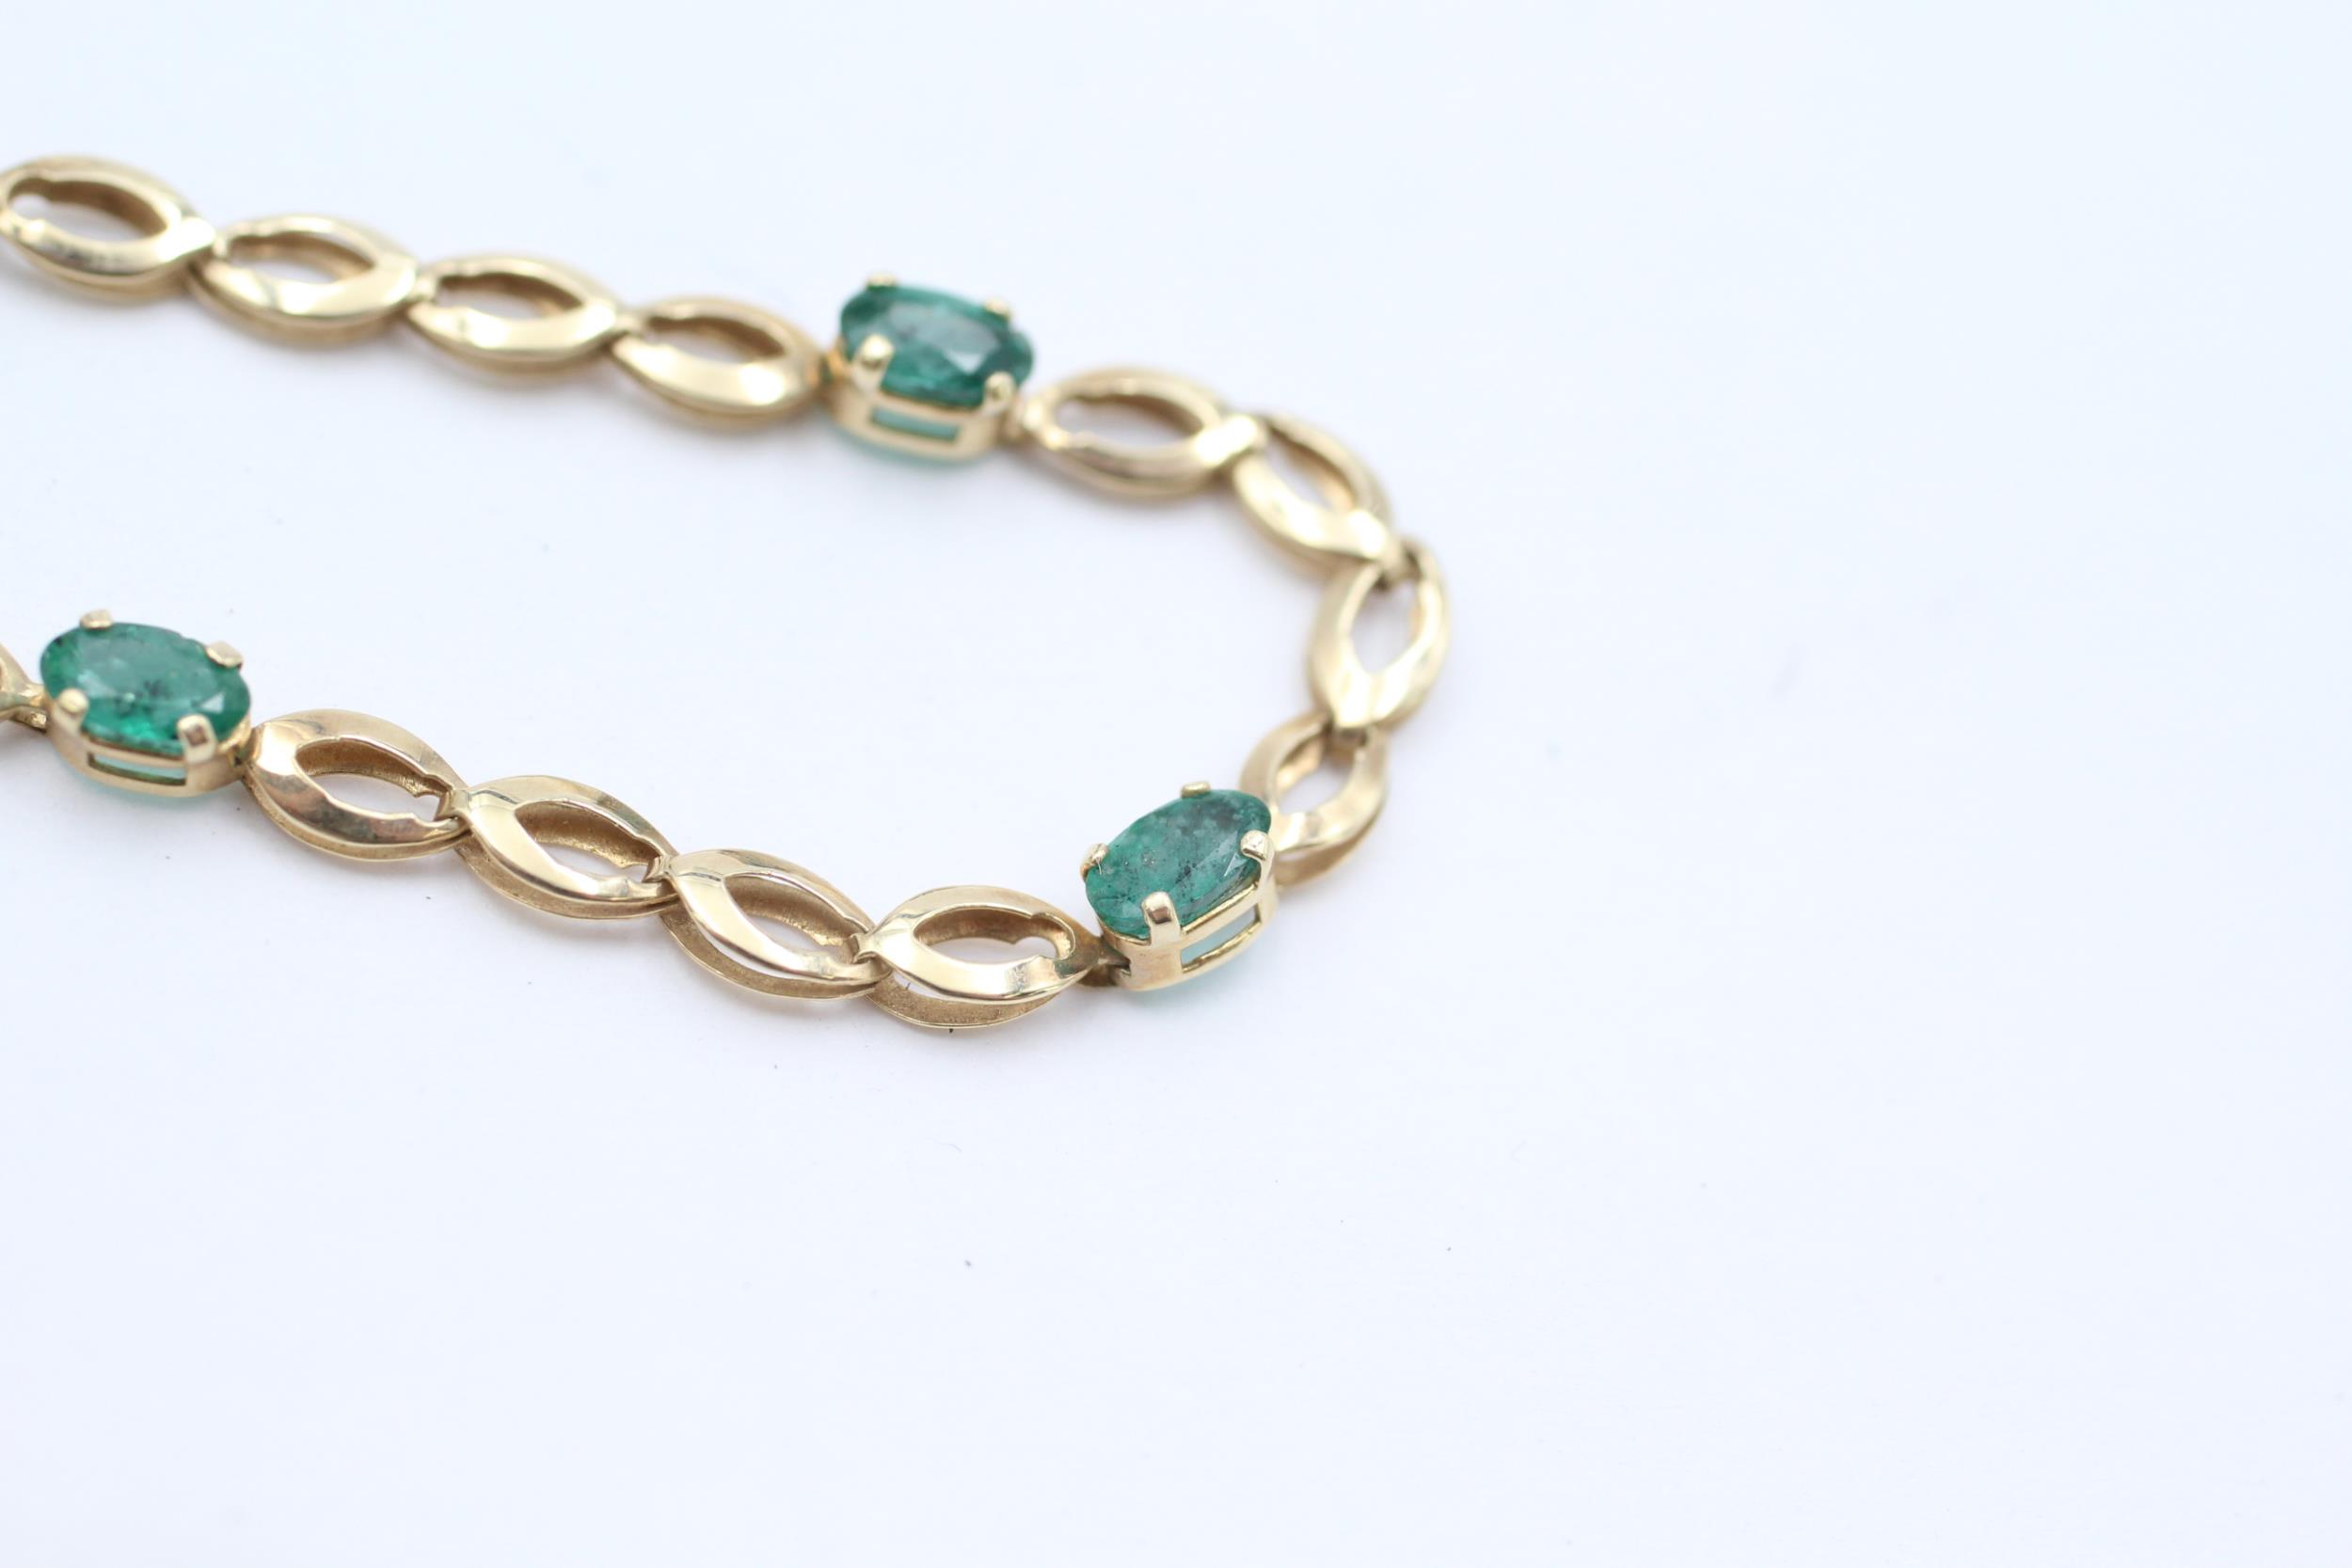 10ct gold emerald bracelet - 2.2 g - Image 5 of 5